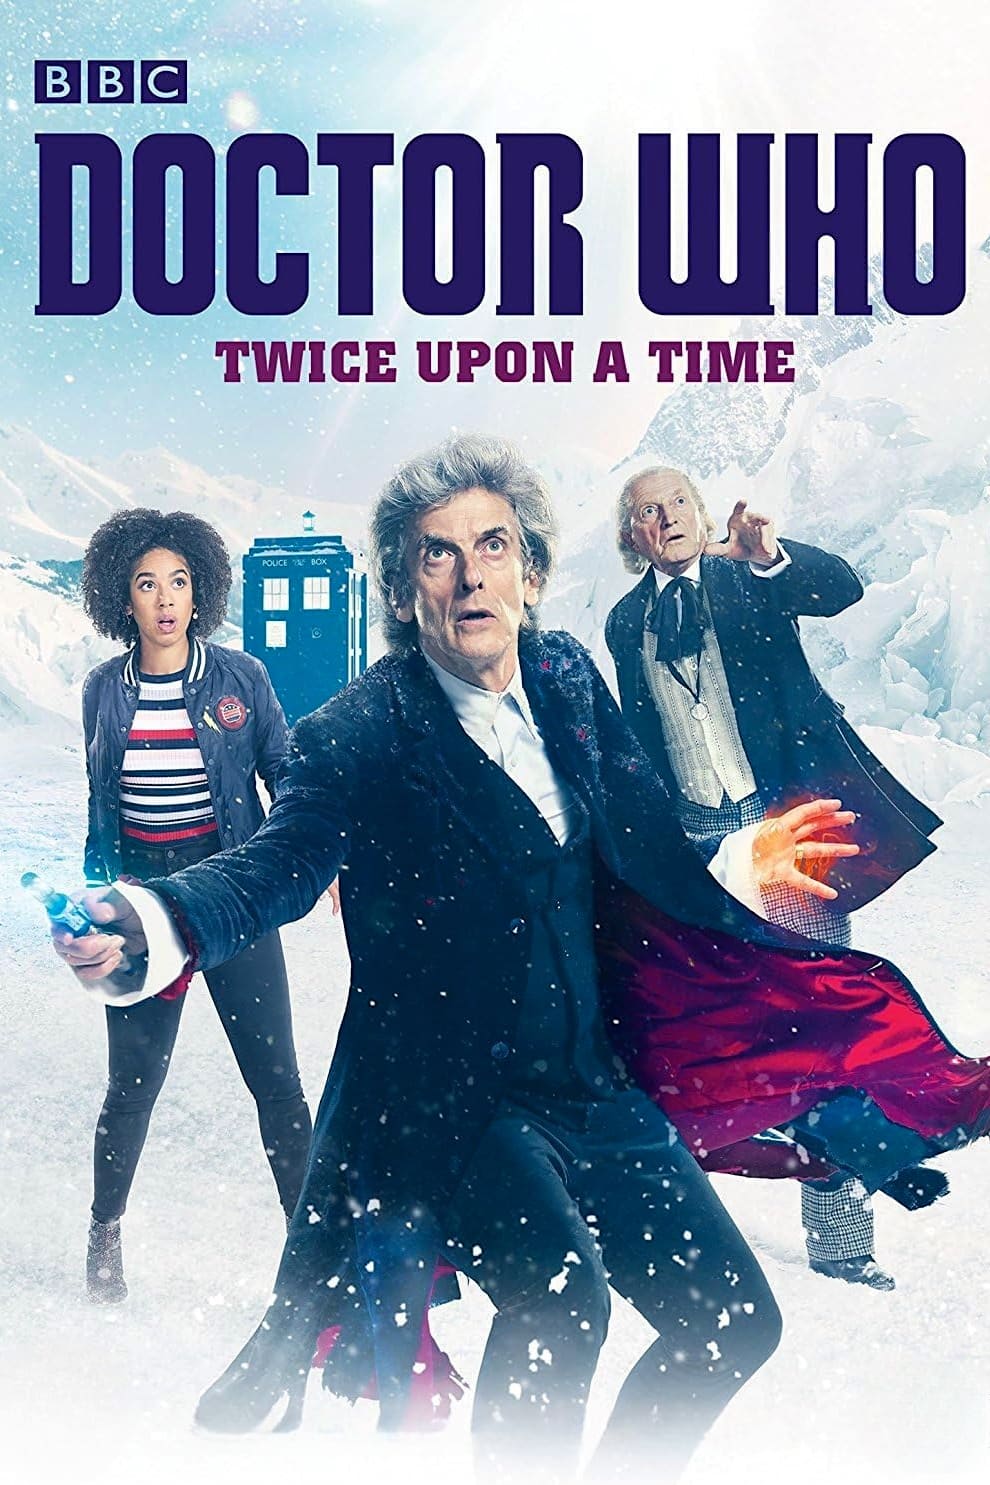 Doctor Who : Il était deux fois (2017)